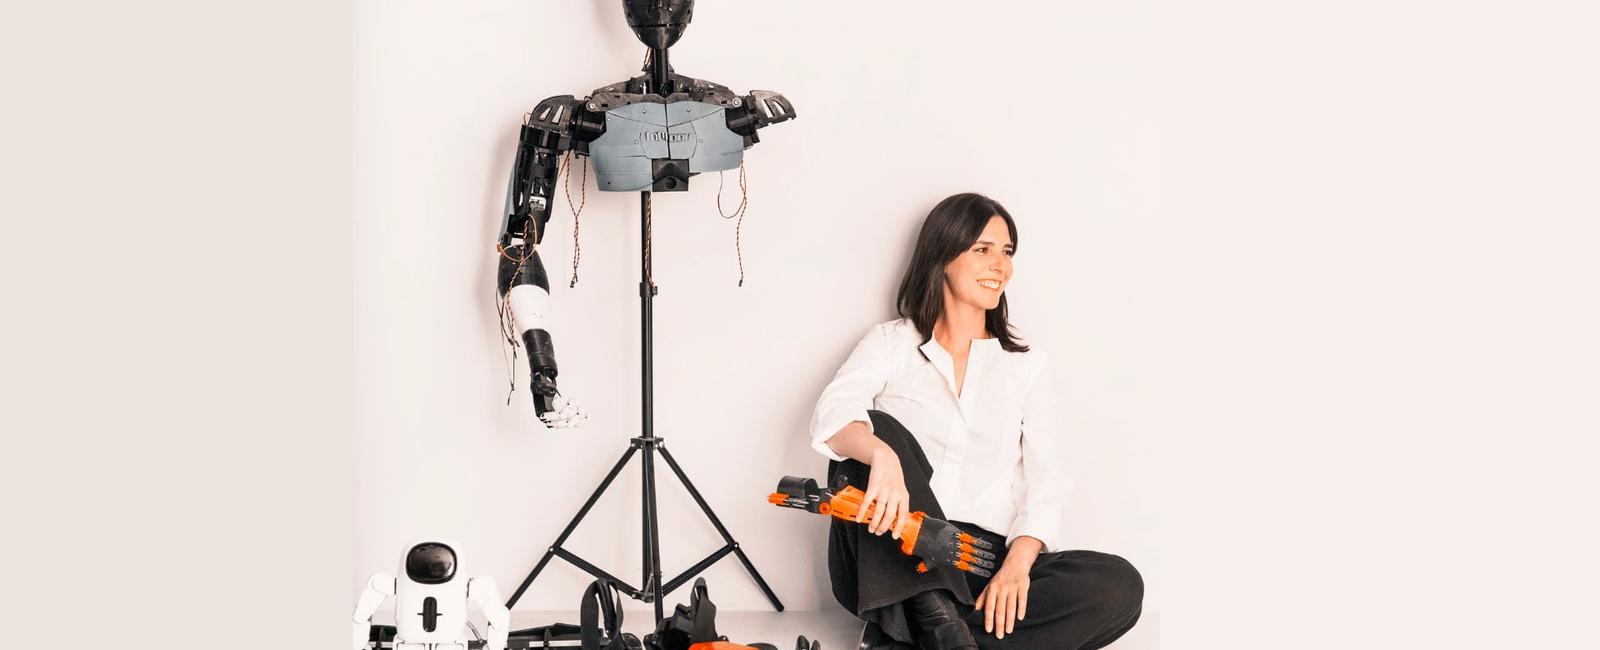 La chica que soñaba: Concha Monje y su robot en una obra de teatro